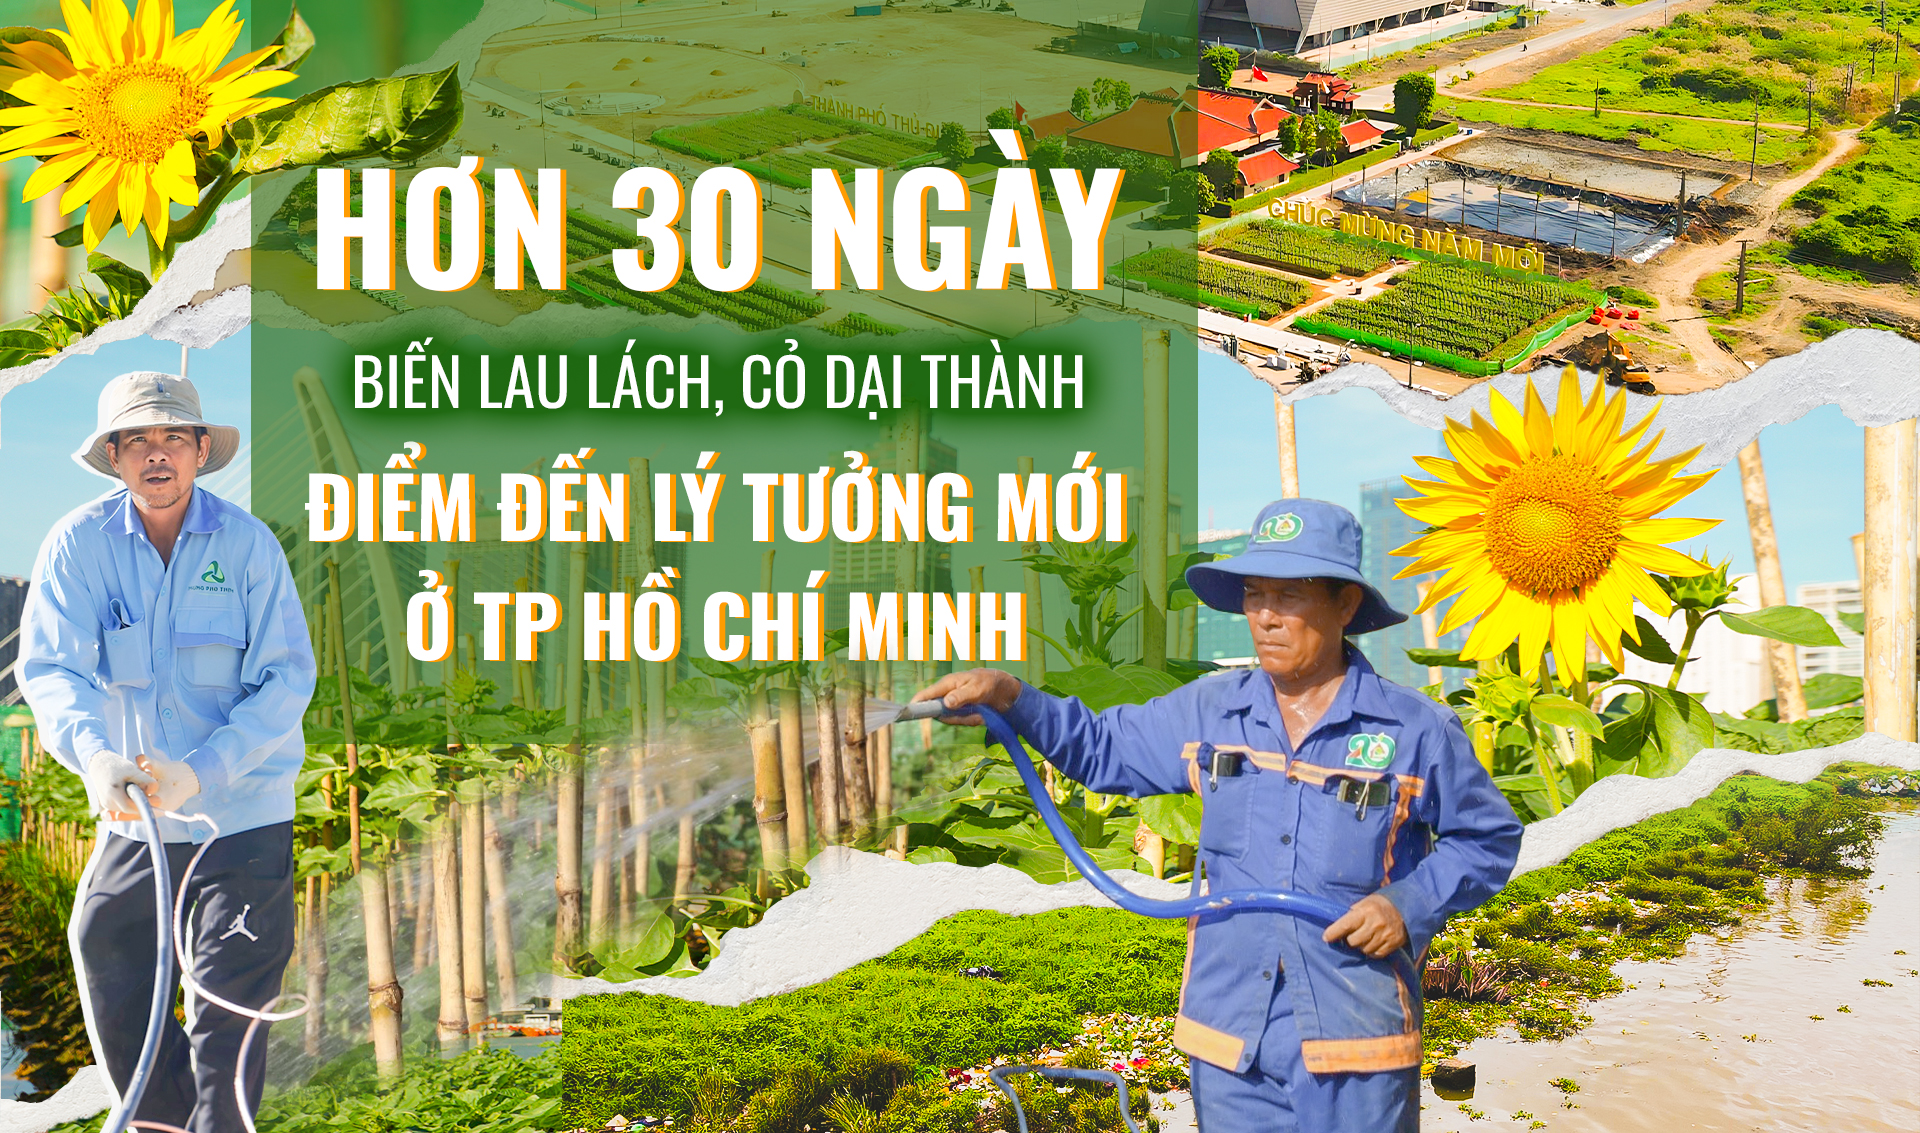 Công viên bờ sông Sài Gòn: Hơn 30 ngày thần tốc biến lau lách, cỏ dại thành điểm đến lý tưởng